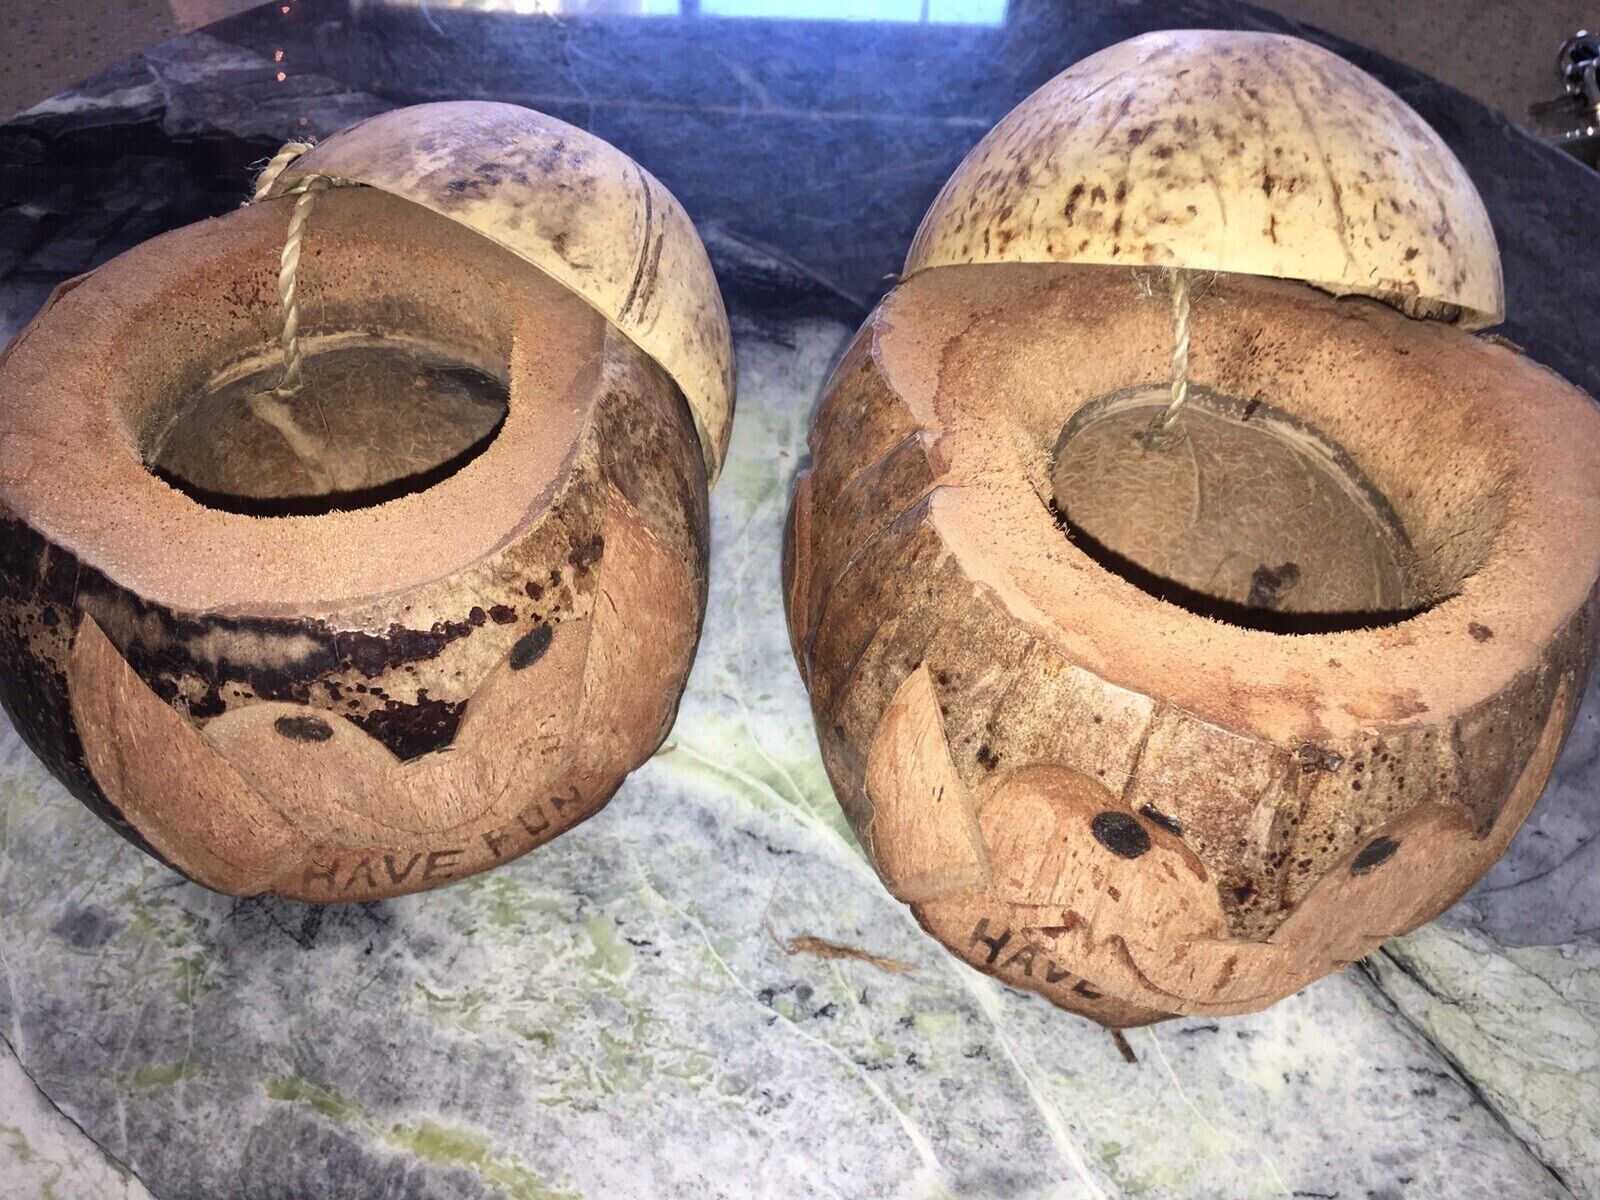 Pair of Hawaiian Coconut Head Tiki Mugs Drinking Cup /Bowl, Bar Keepsake NWT